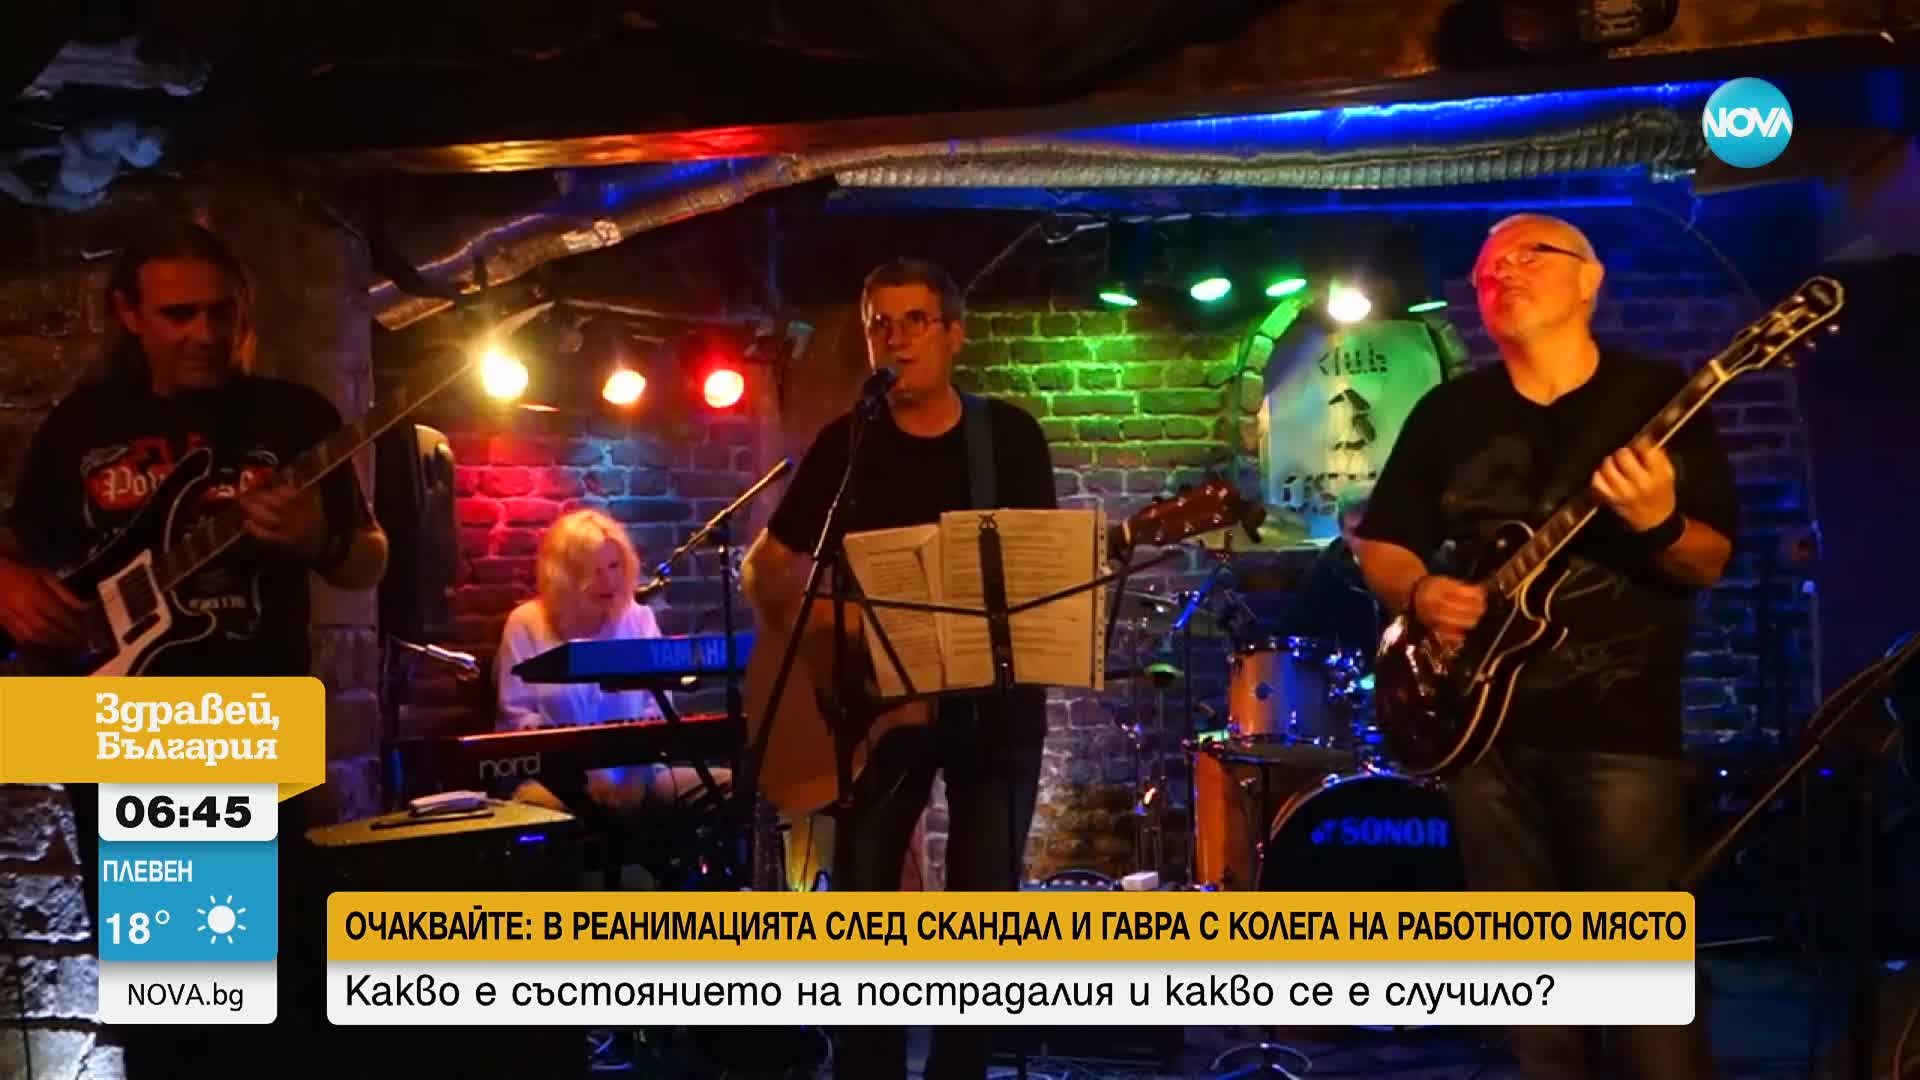 Здравият министър Христо Хинков изпълнява рок музика